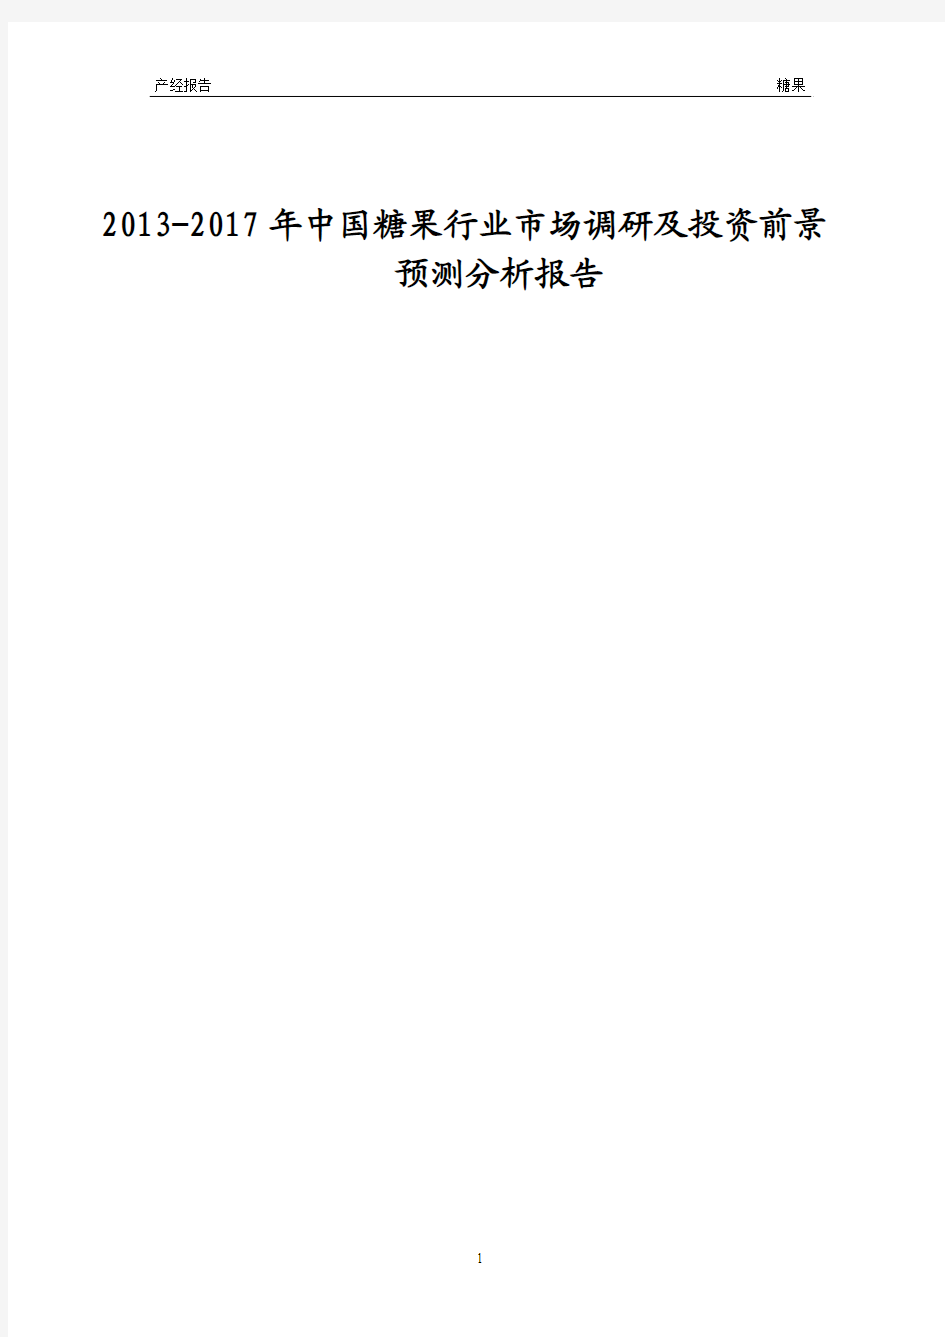 2013-2017年中国糖果行业市场调研及投资前景预测分析报告成品